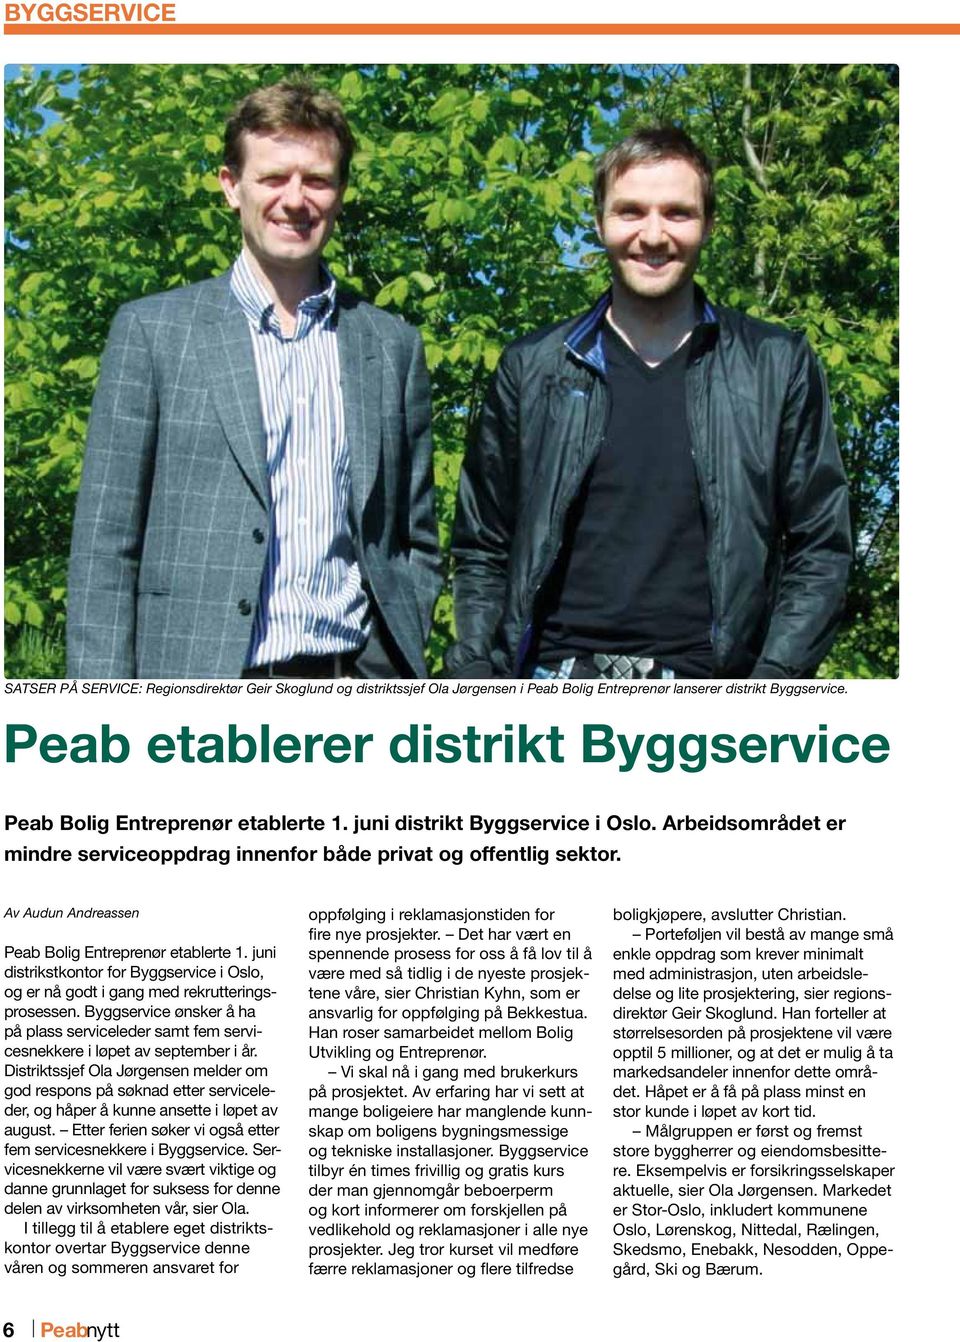 Av Audun Andreassen Peab Bolig Entreprenør etablerte 1. juni distrikstkontor for Byggservice i Oslo, og er nå godt i gang med rekrutteringsprosessen.